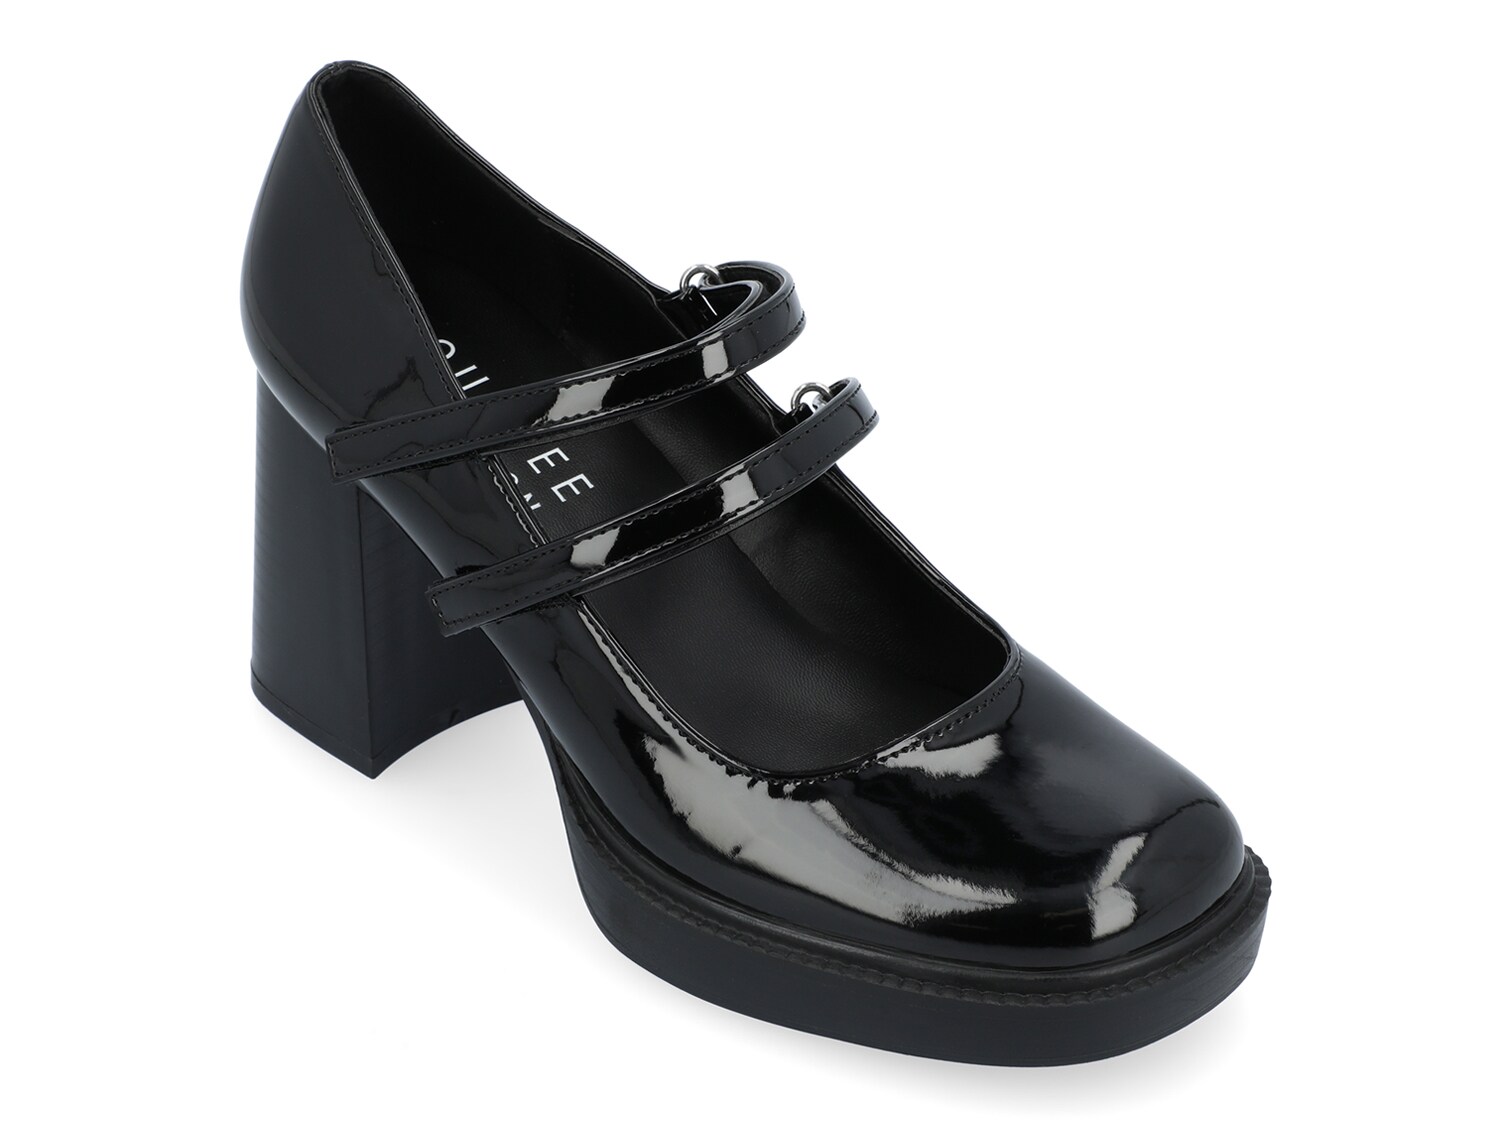 Туфли на платформе Journee Collection Shasta, черный туфли лодочки женские на платформе классические свадебные туфли мэри джейн средний каблук черные белые 2021